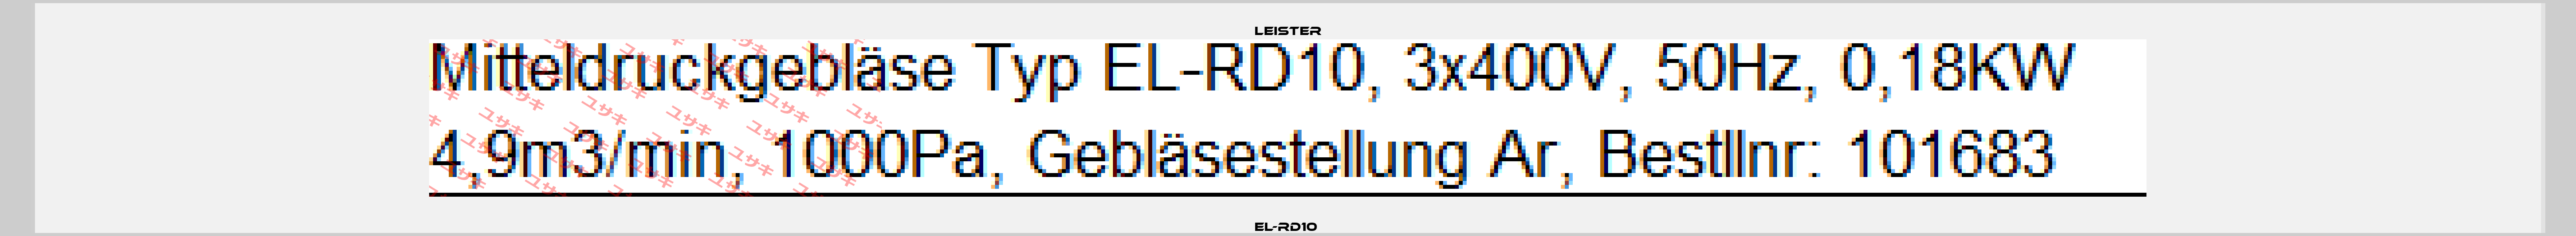 EL-RD10  Leister